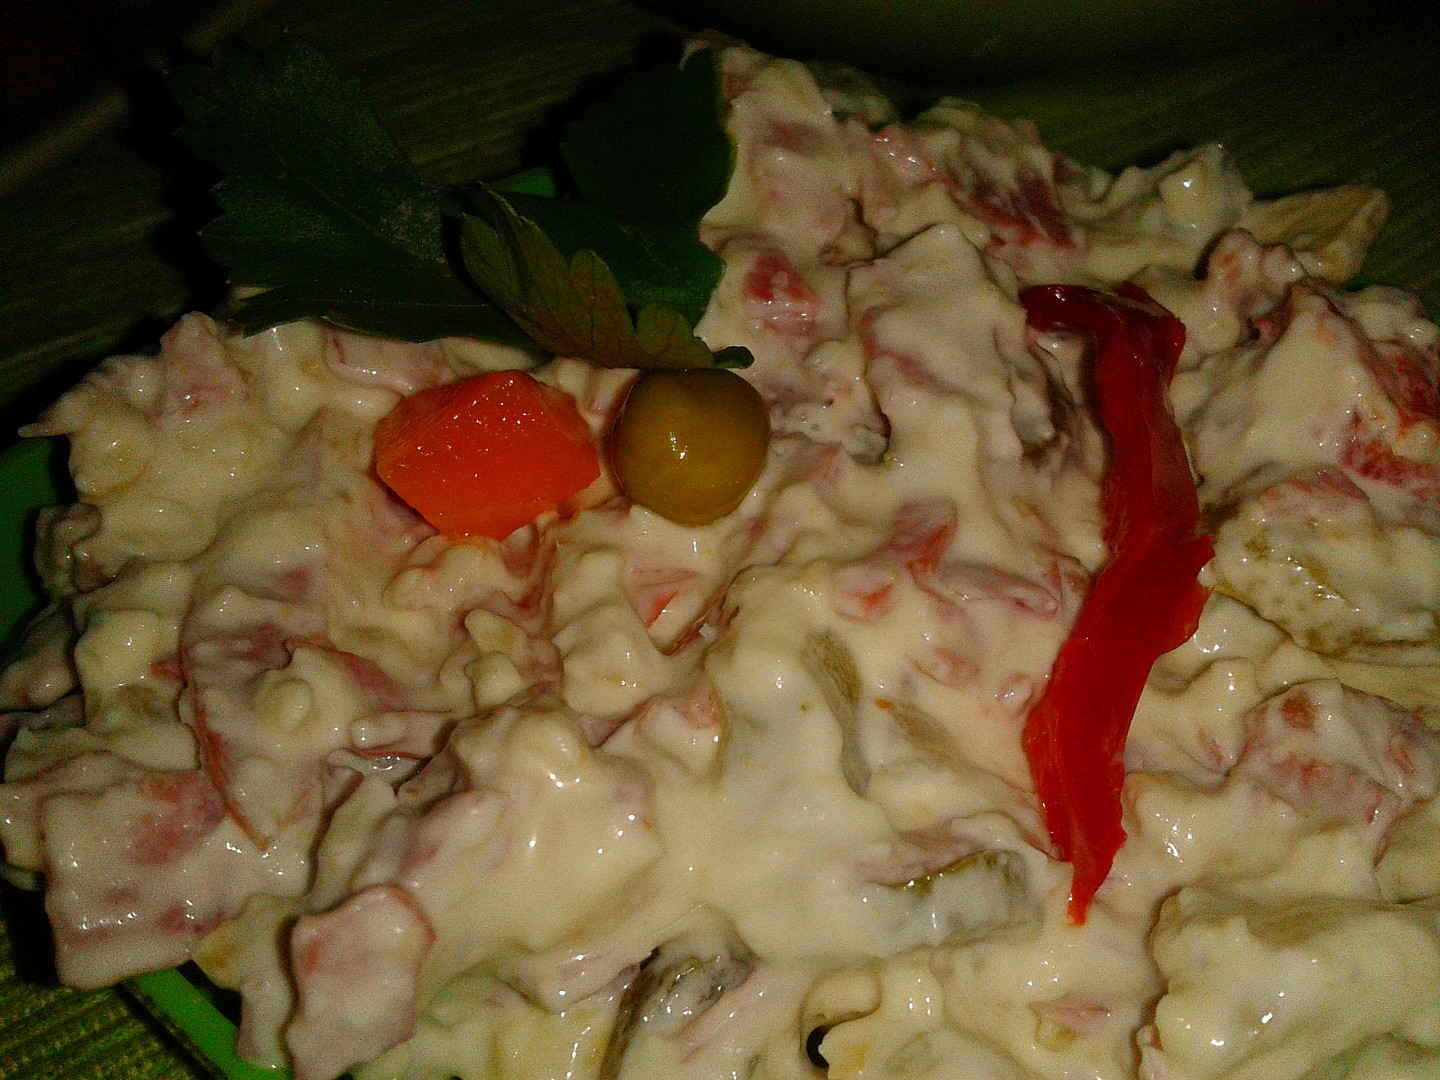 Pomazánka (i salát) Pikant“ z nivy, oříšků a malých cibulek